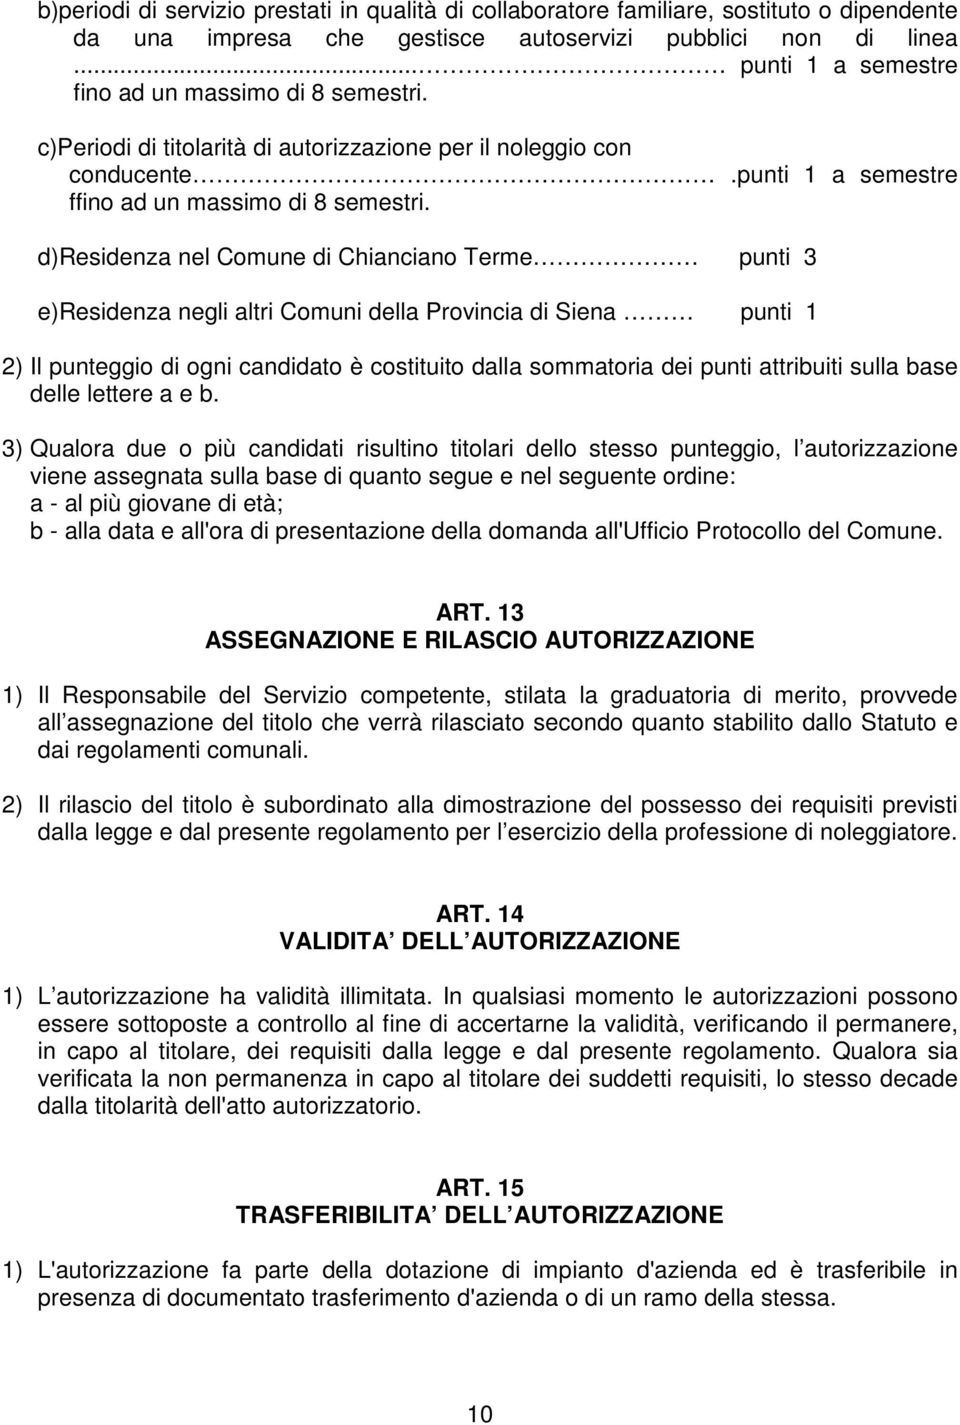 d)residenza nel Comune di Chianciano Terme punti 3 e)residenza negli altri Comuni della Provincia di Siena punti 1 2) Il punteggio di ogni candidato è costituito dalla sommatoria dei punti attribuiti